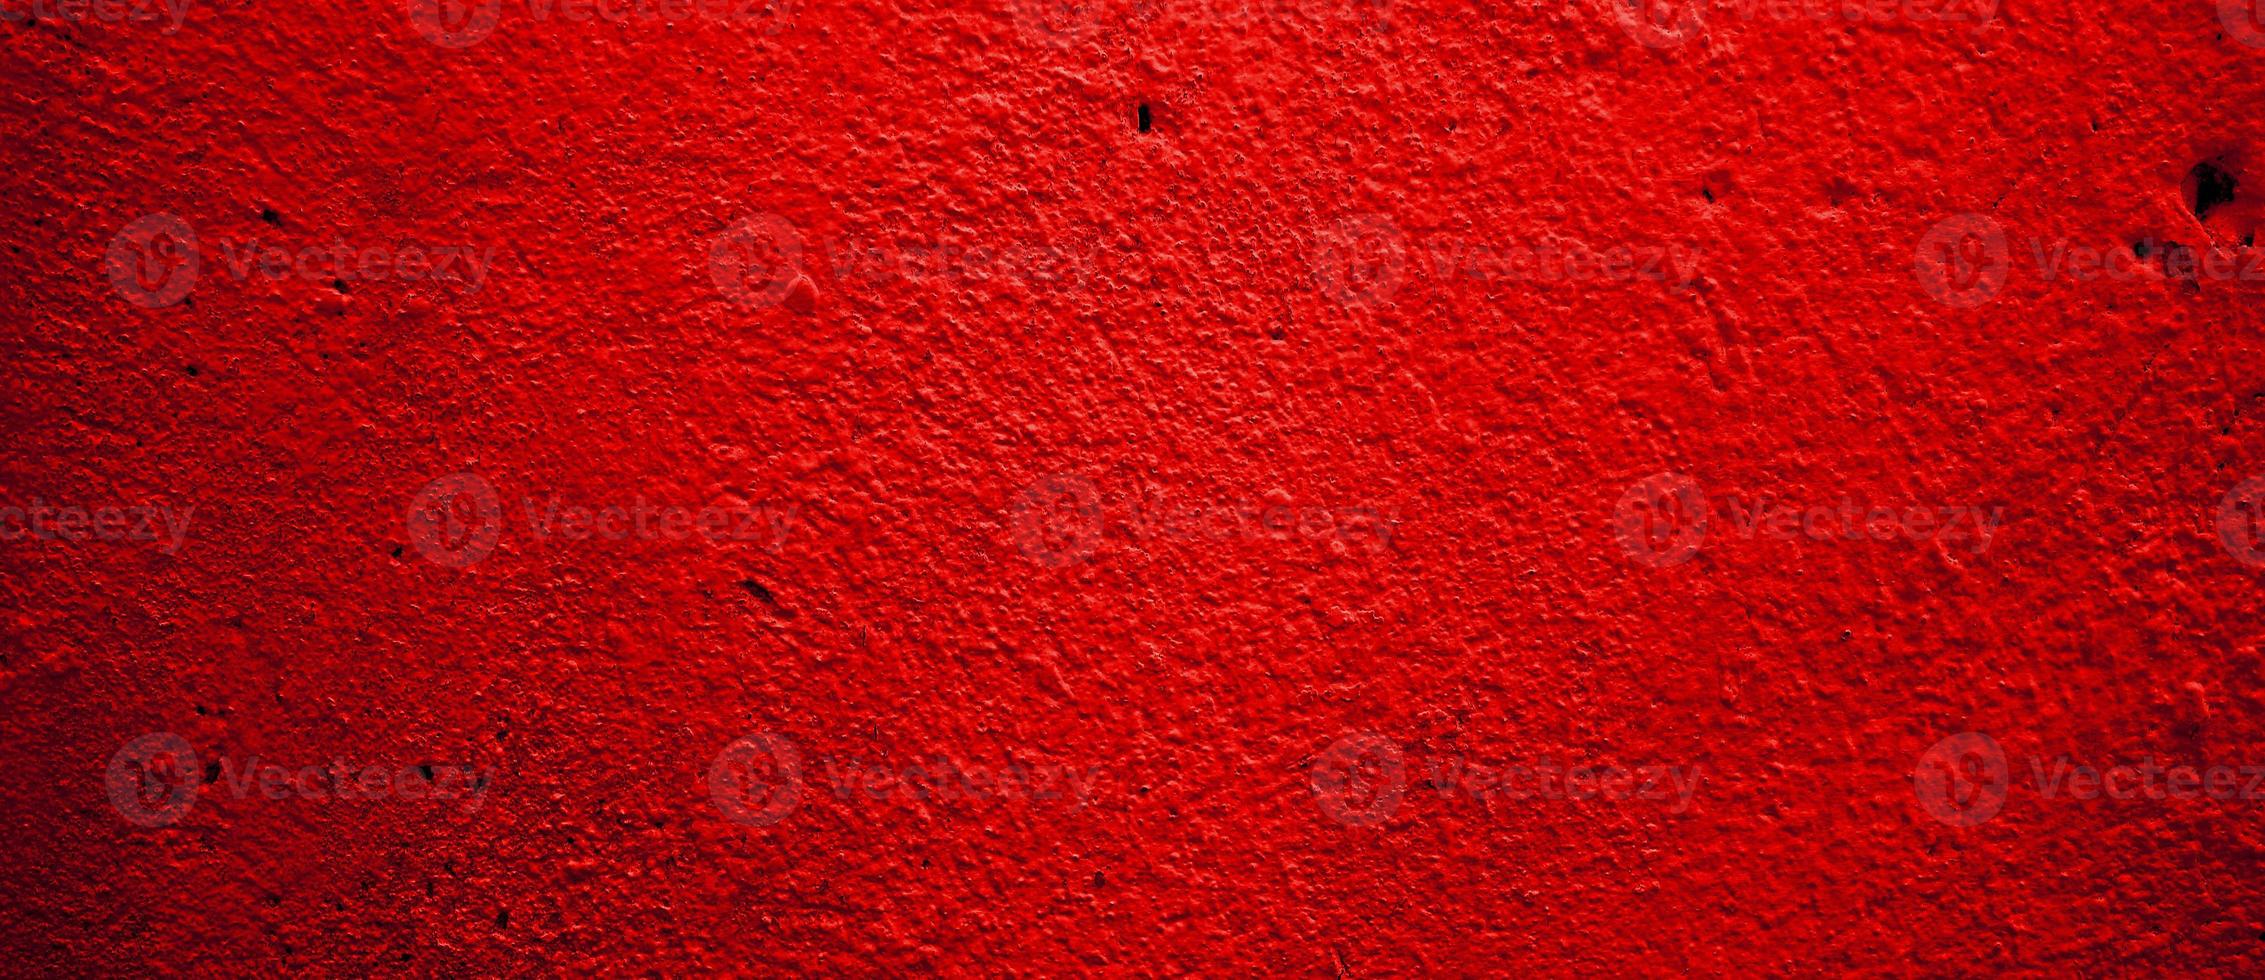 enge rode muur voor achtergrond. rode muur krassen foto